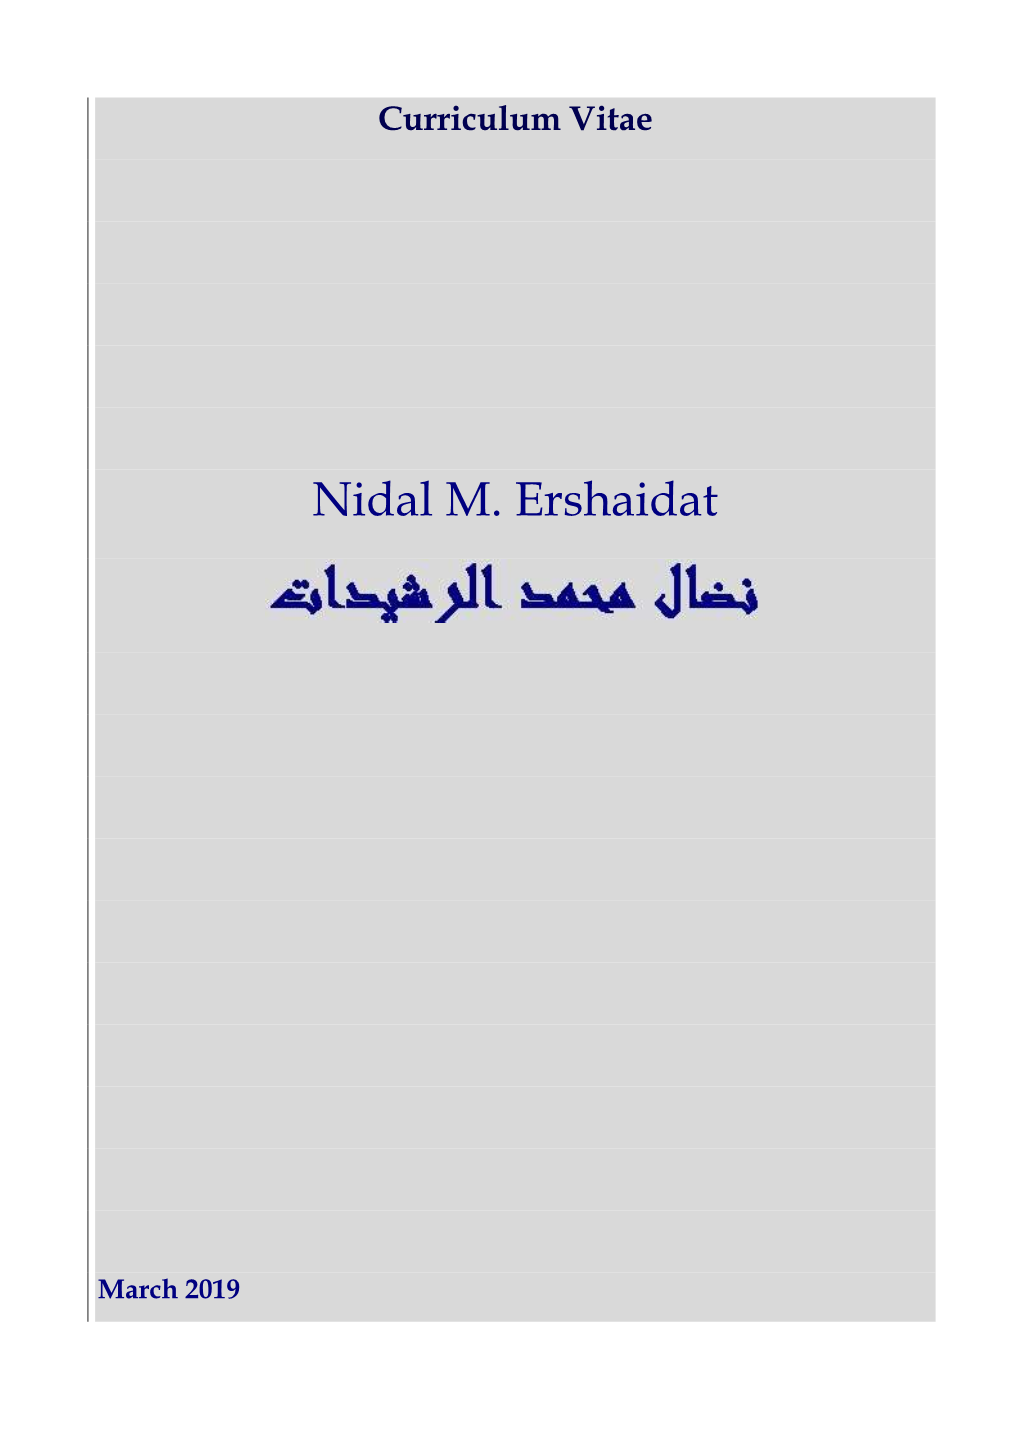 Nidal M. Ershaidat